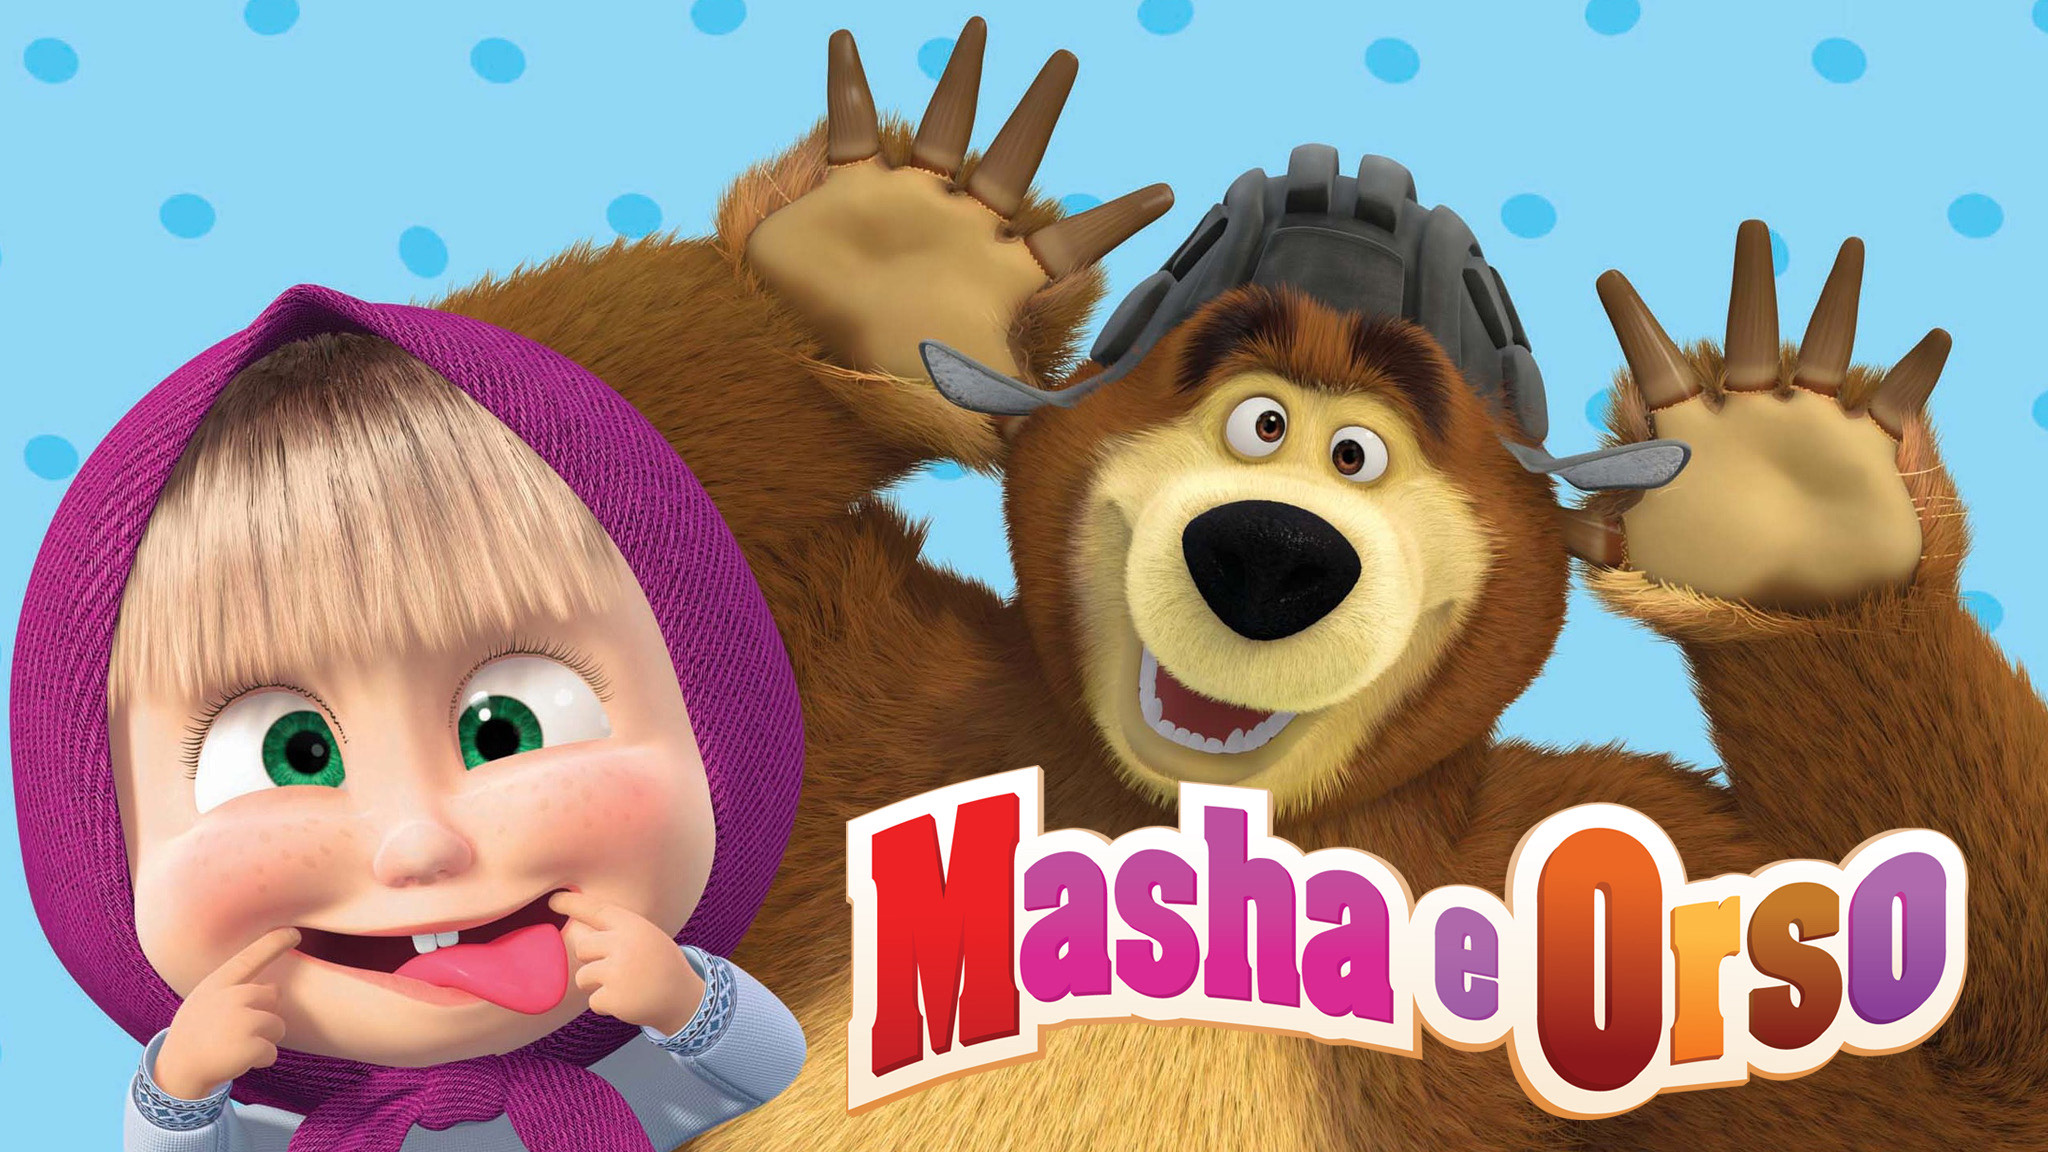 Masha orso. Masha e Orso 4. Masha e Orso logo. Masha e Orso Rai YOYO. Masha e Orso 1 Episode.